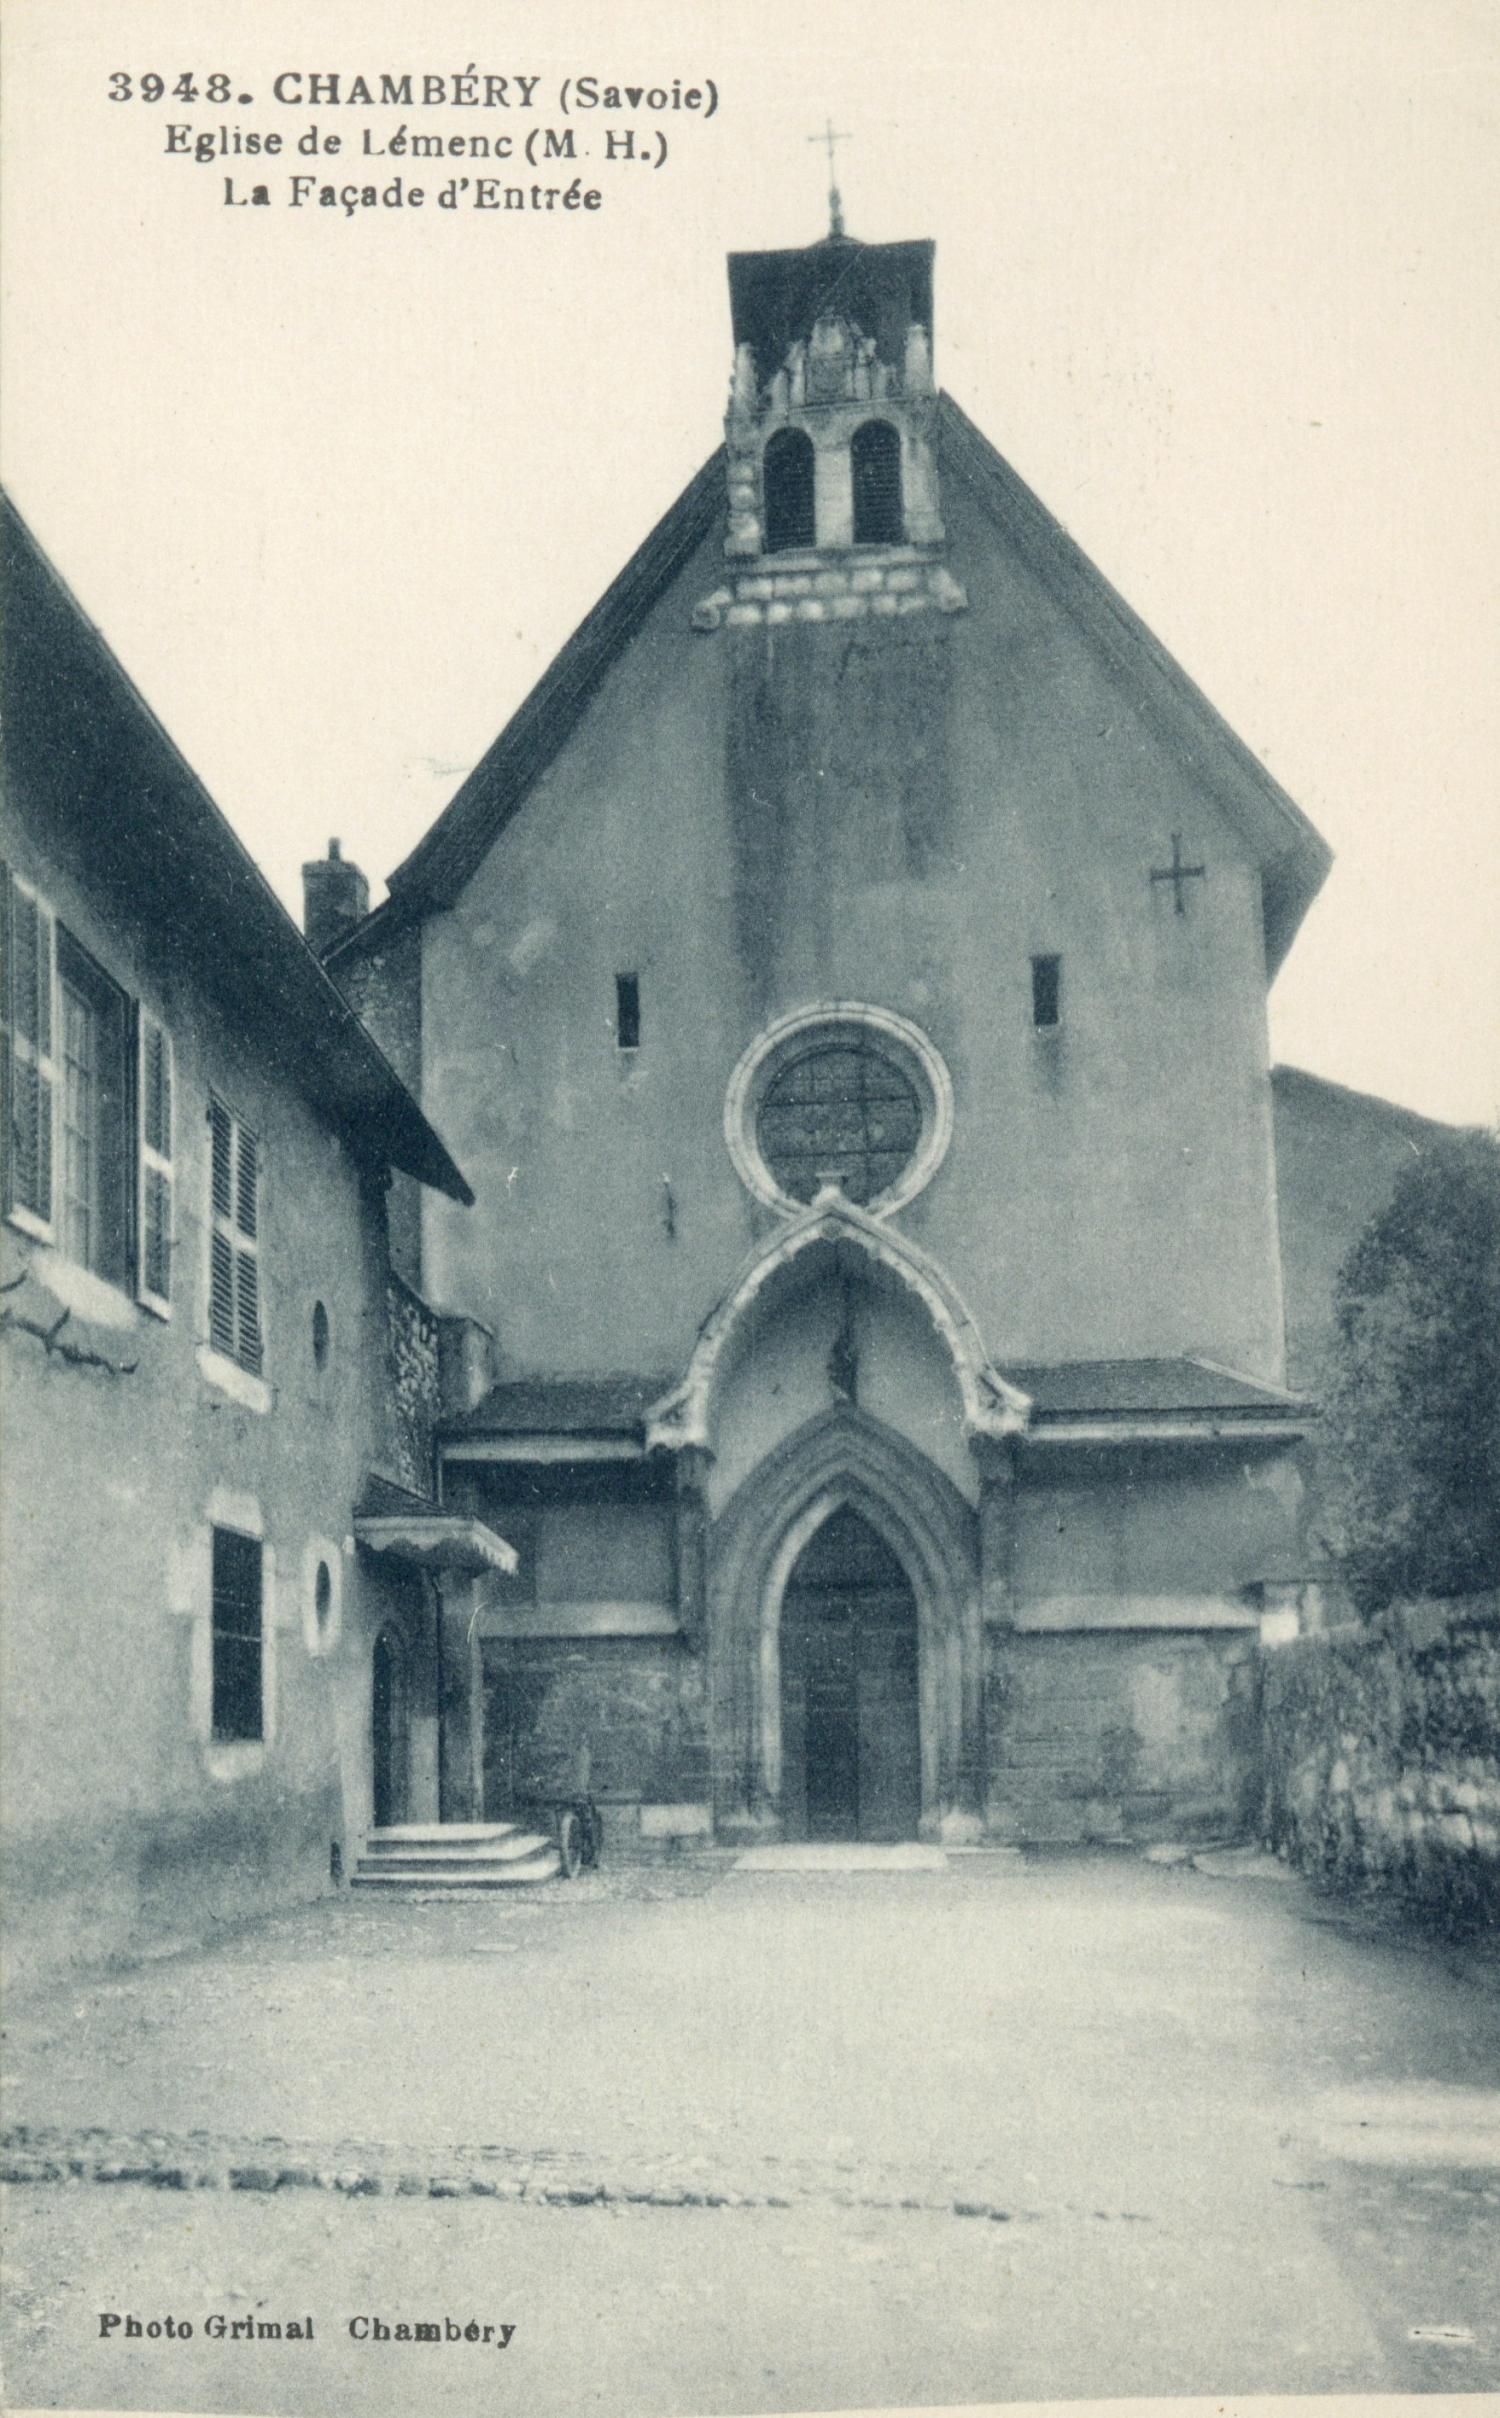 Chambéry (Savoie) - Eglise de Lémenc (M. H.)